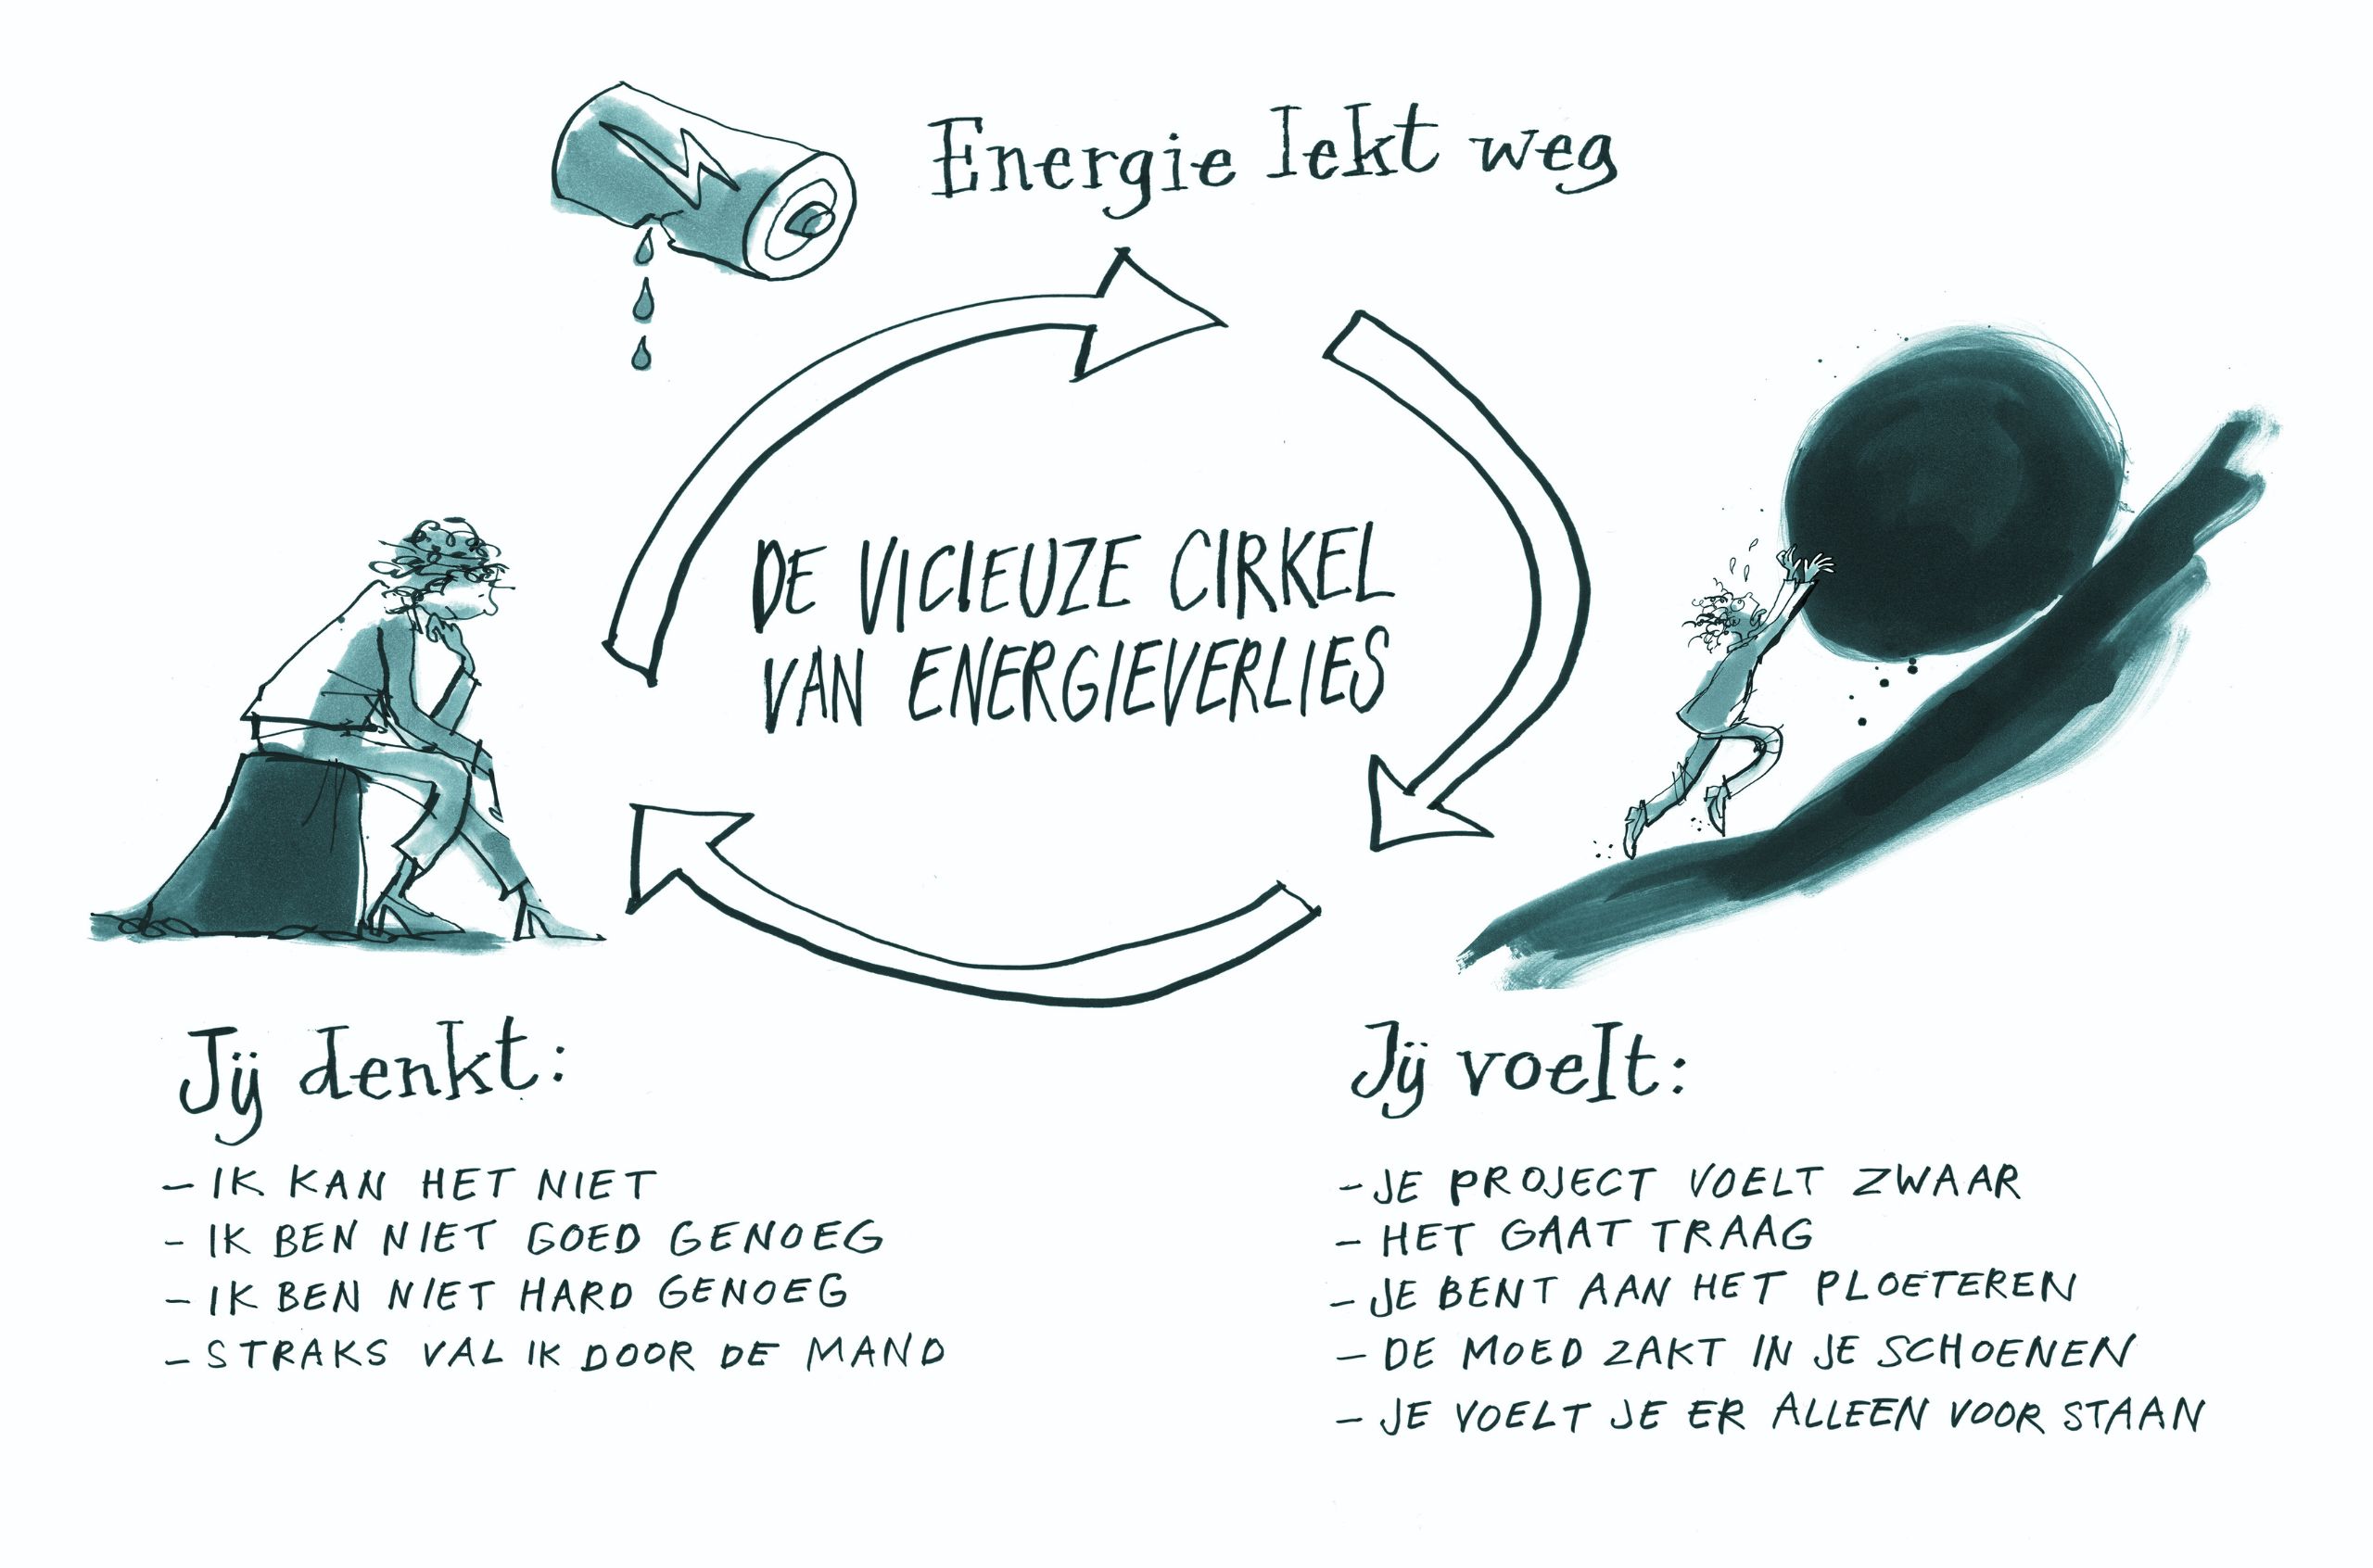 De vicieuze cirkel van energieverlies